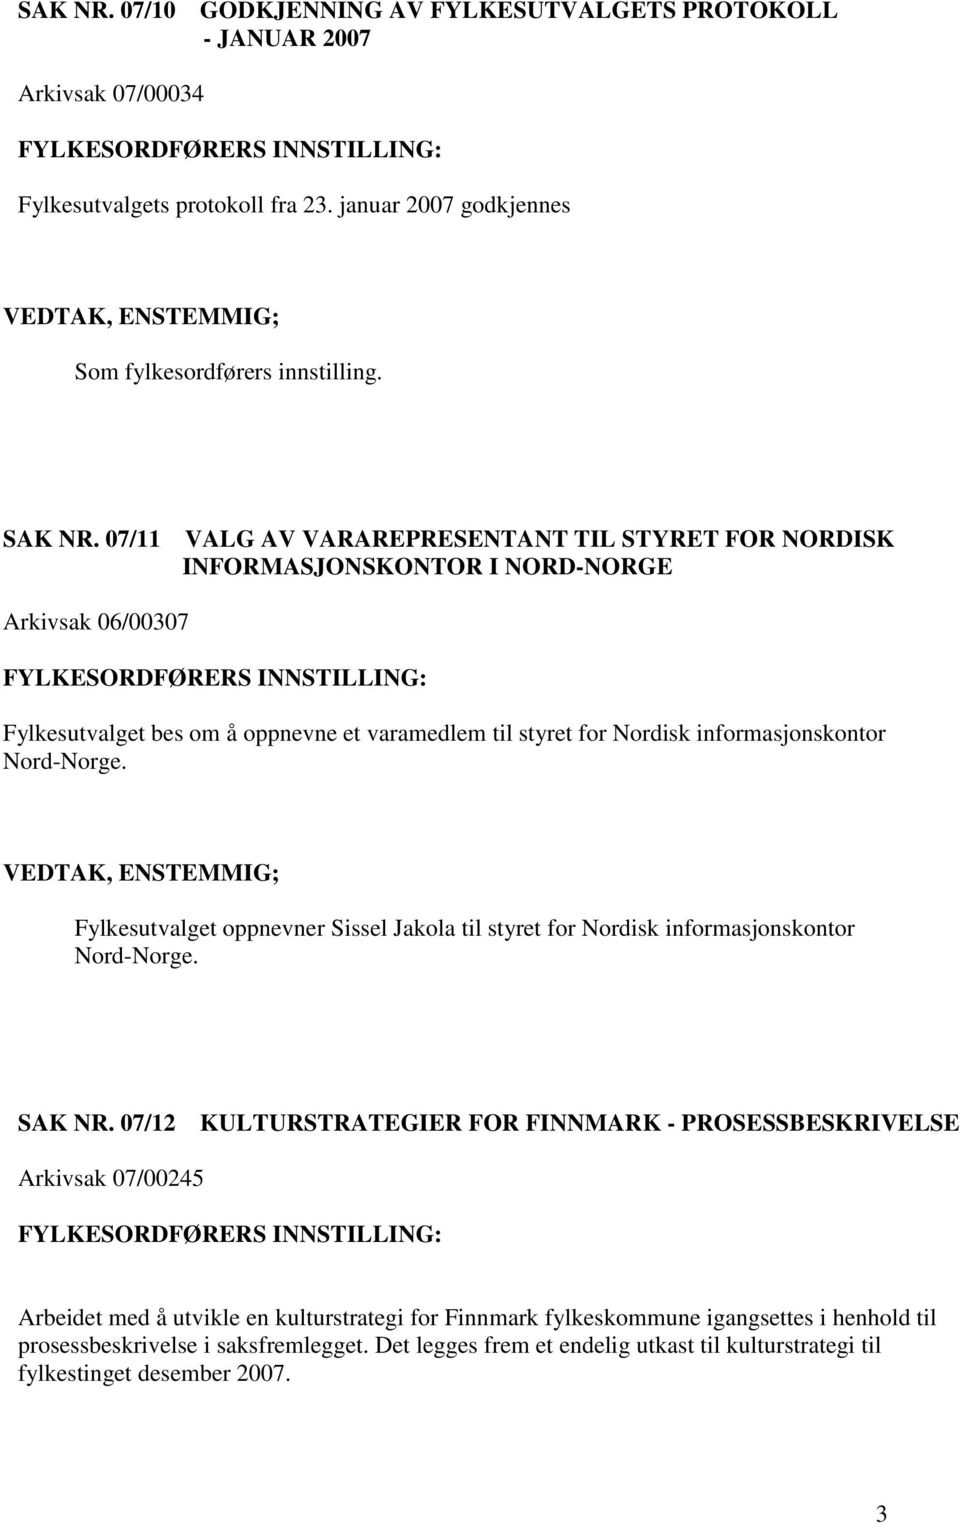 Nord-Norge. Fylkesutvalget oppnevner Sissel Jakola til styret for Nordisk informasjonskontor Nord-Norge. SAK NR.